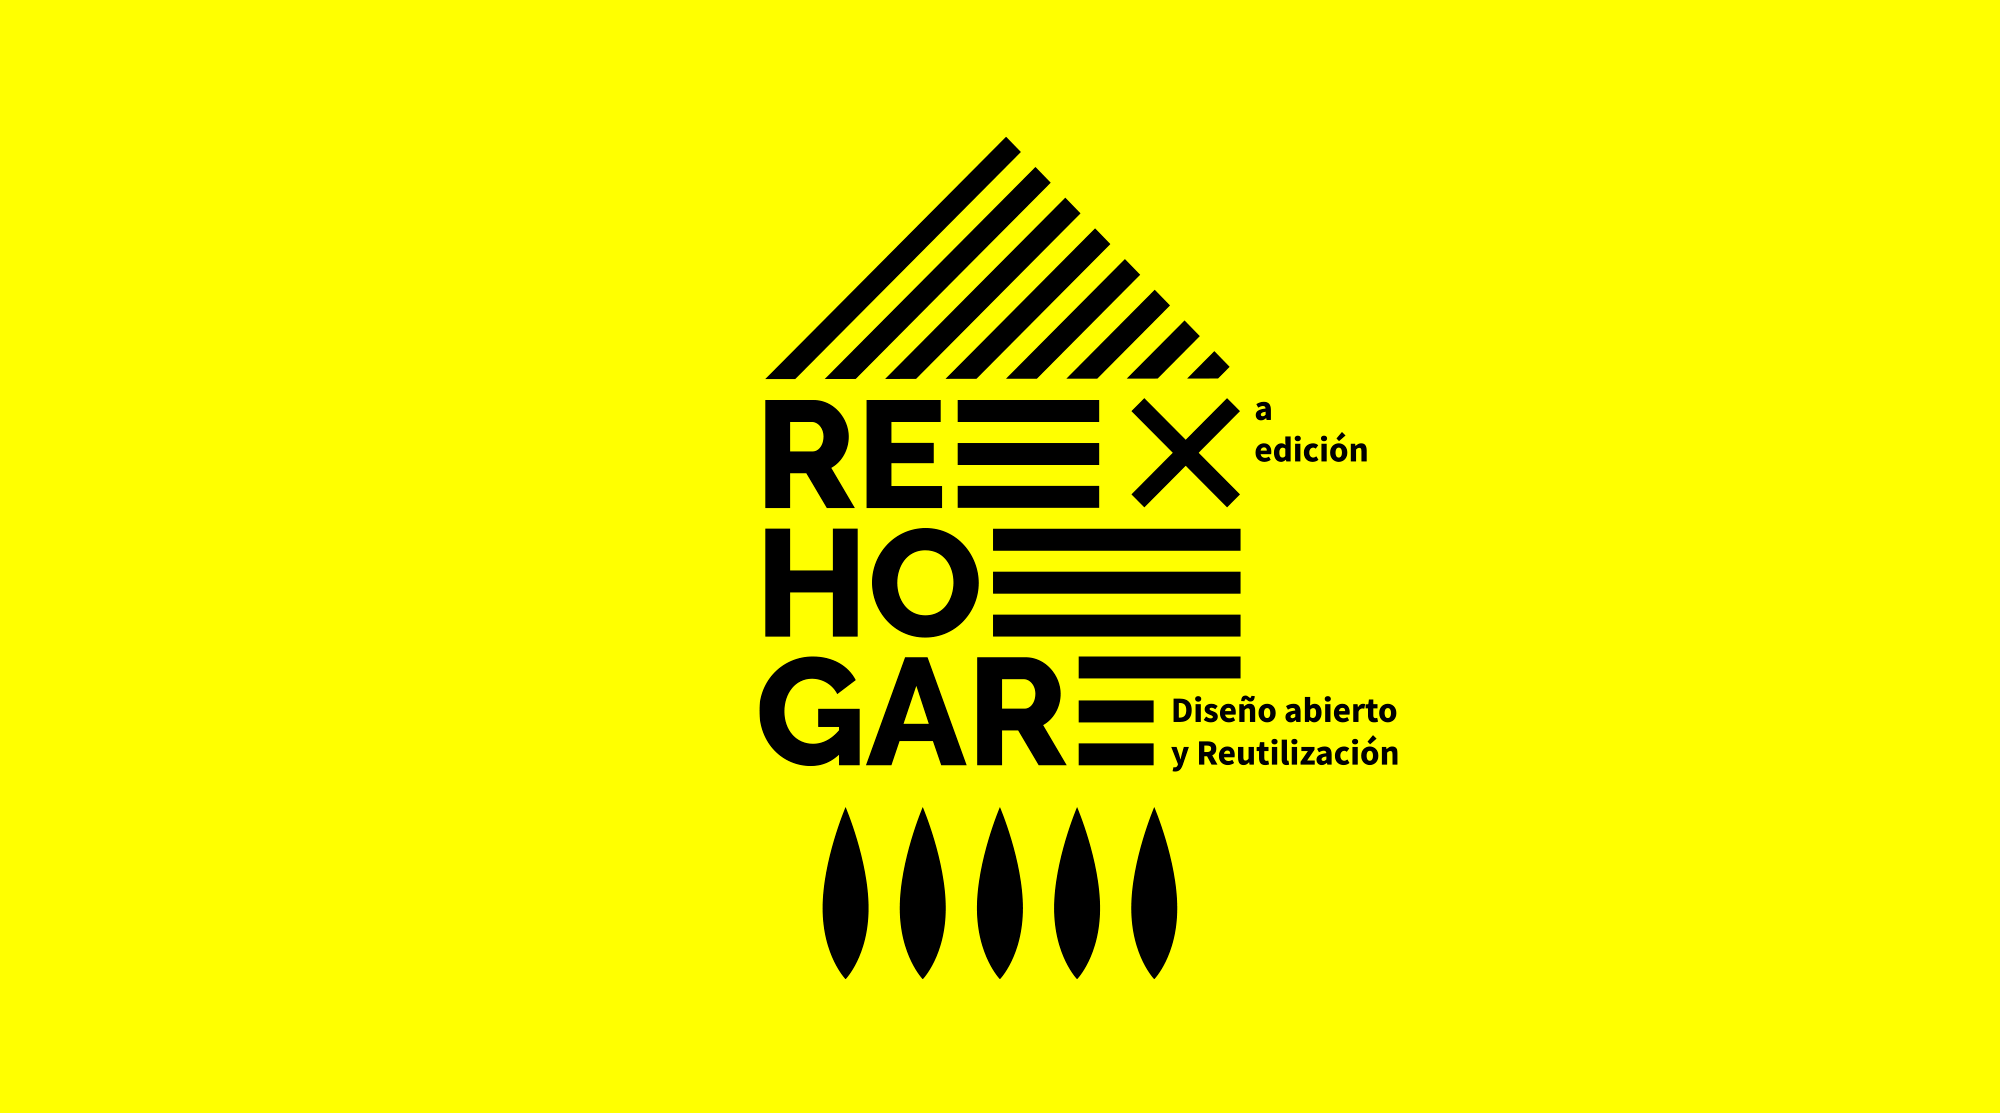 REHOGAR X